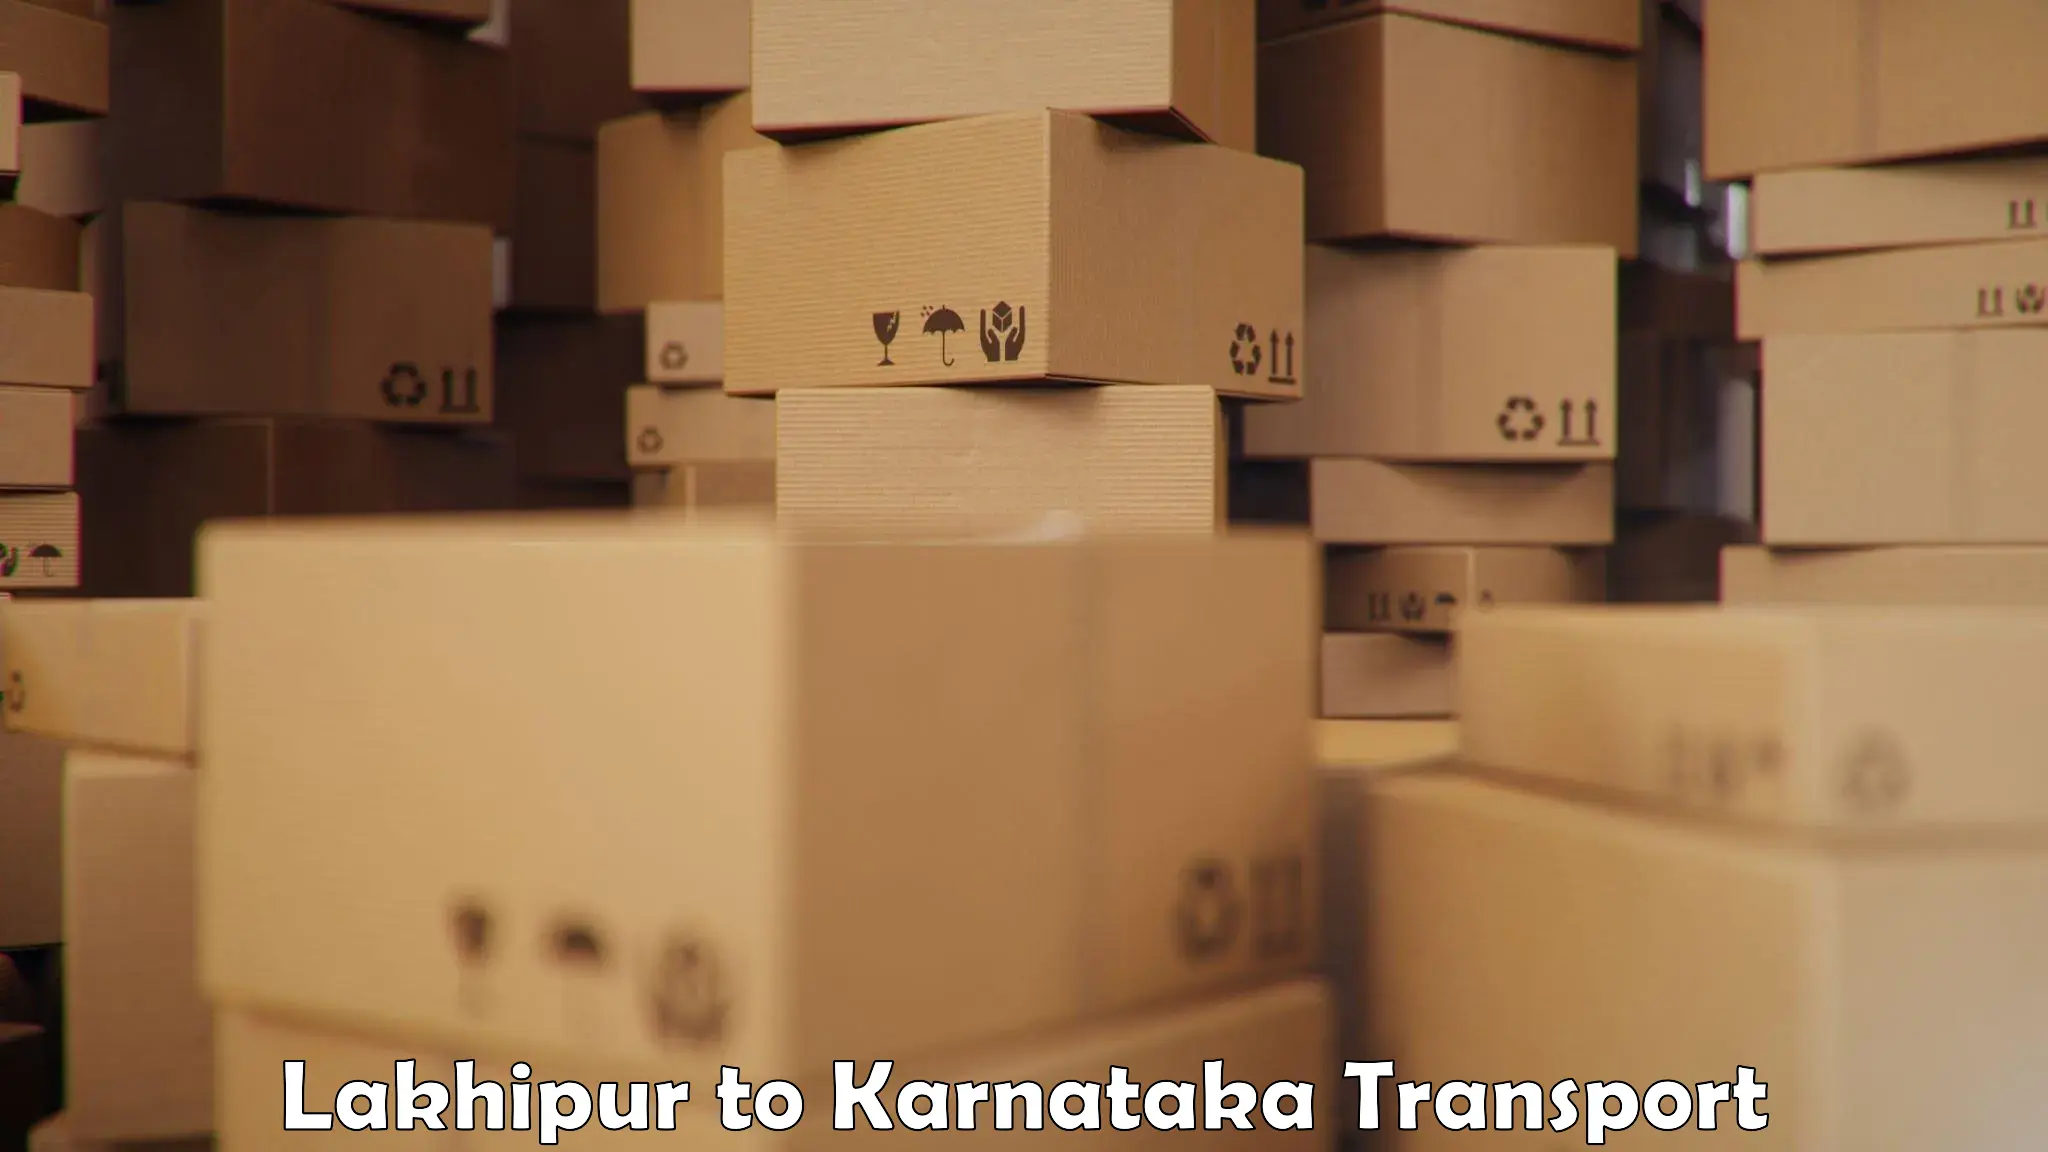 Luggage transport services Lakhipur to Chamarajanagar